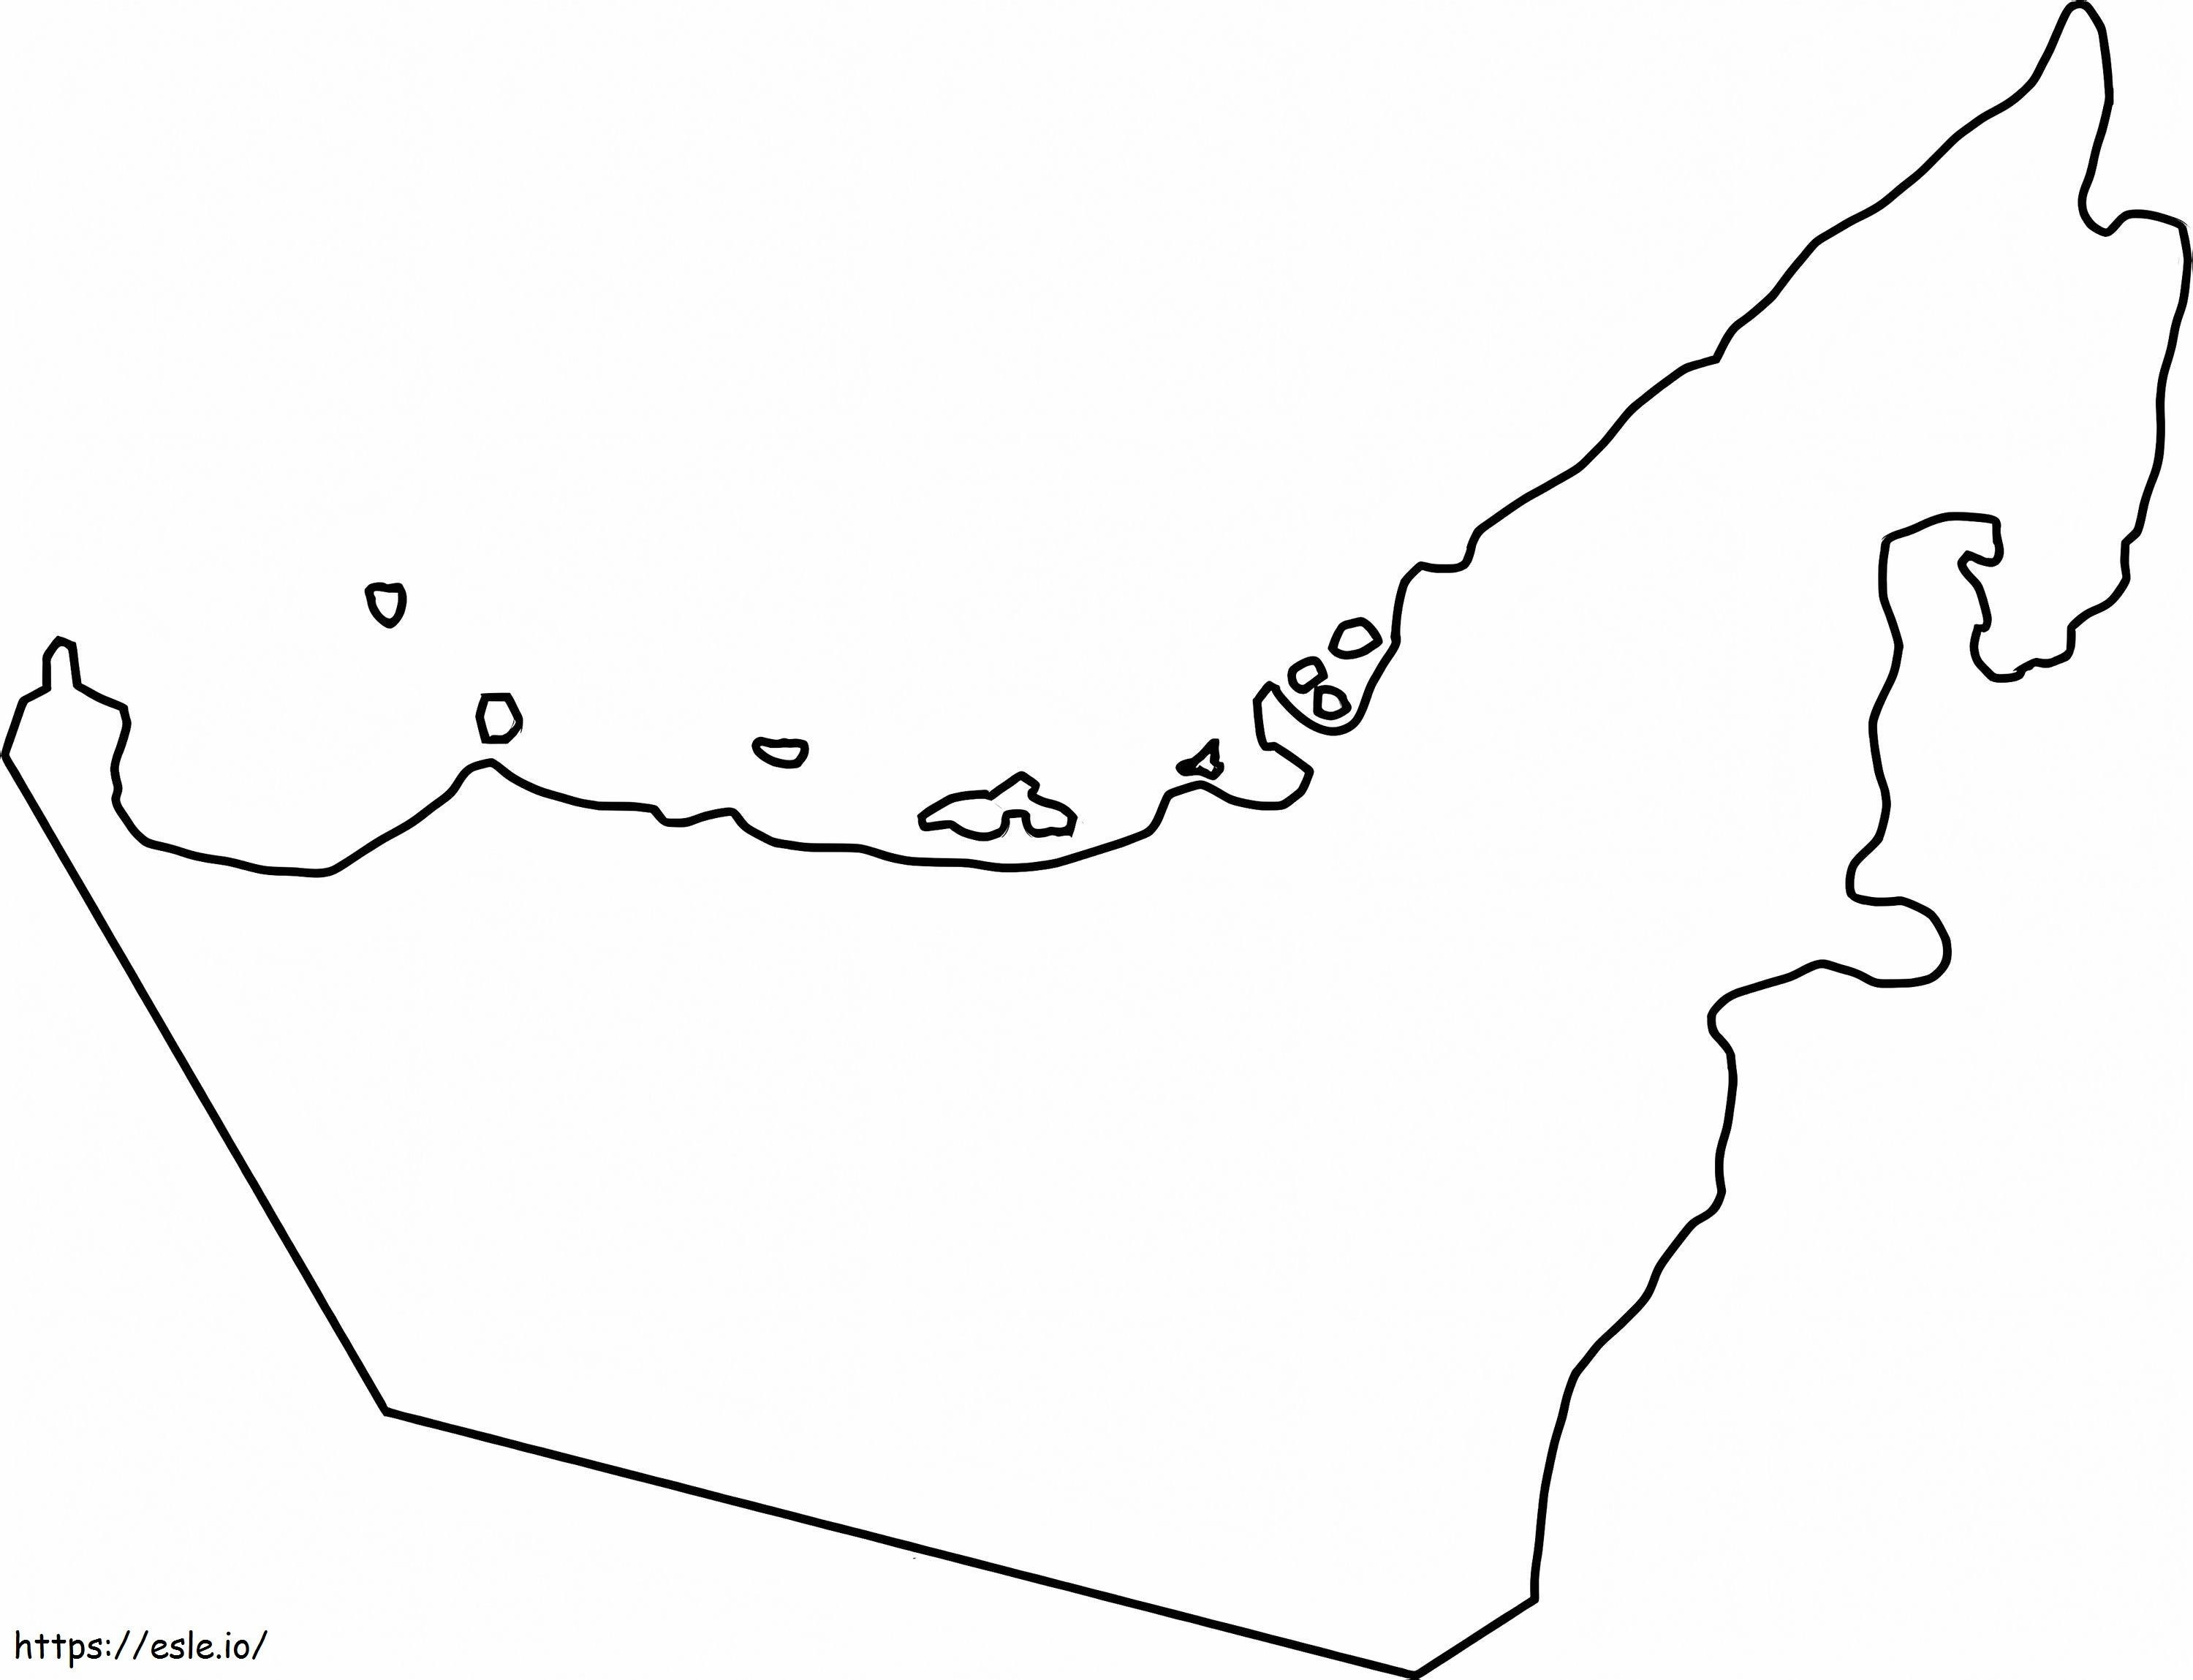 Mapa konturowa Zjednoczonych Emiratów Arabskich kolorowanka